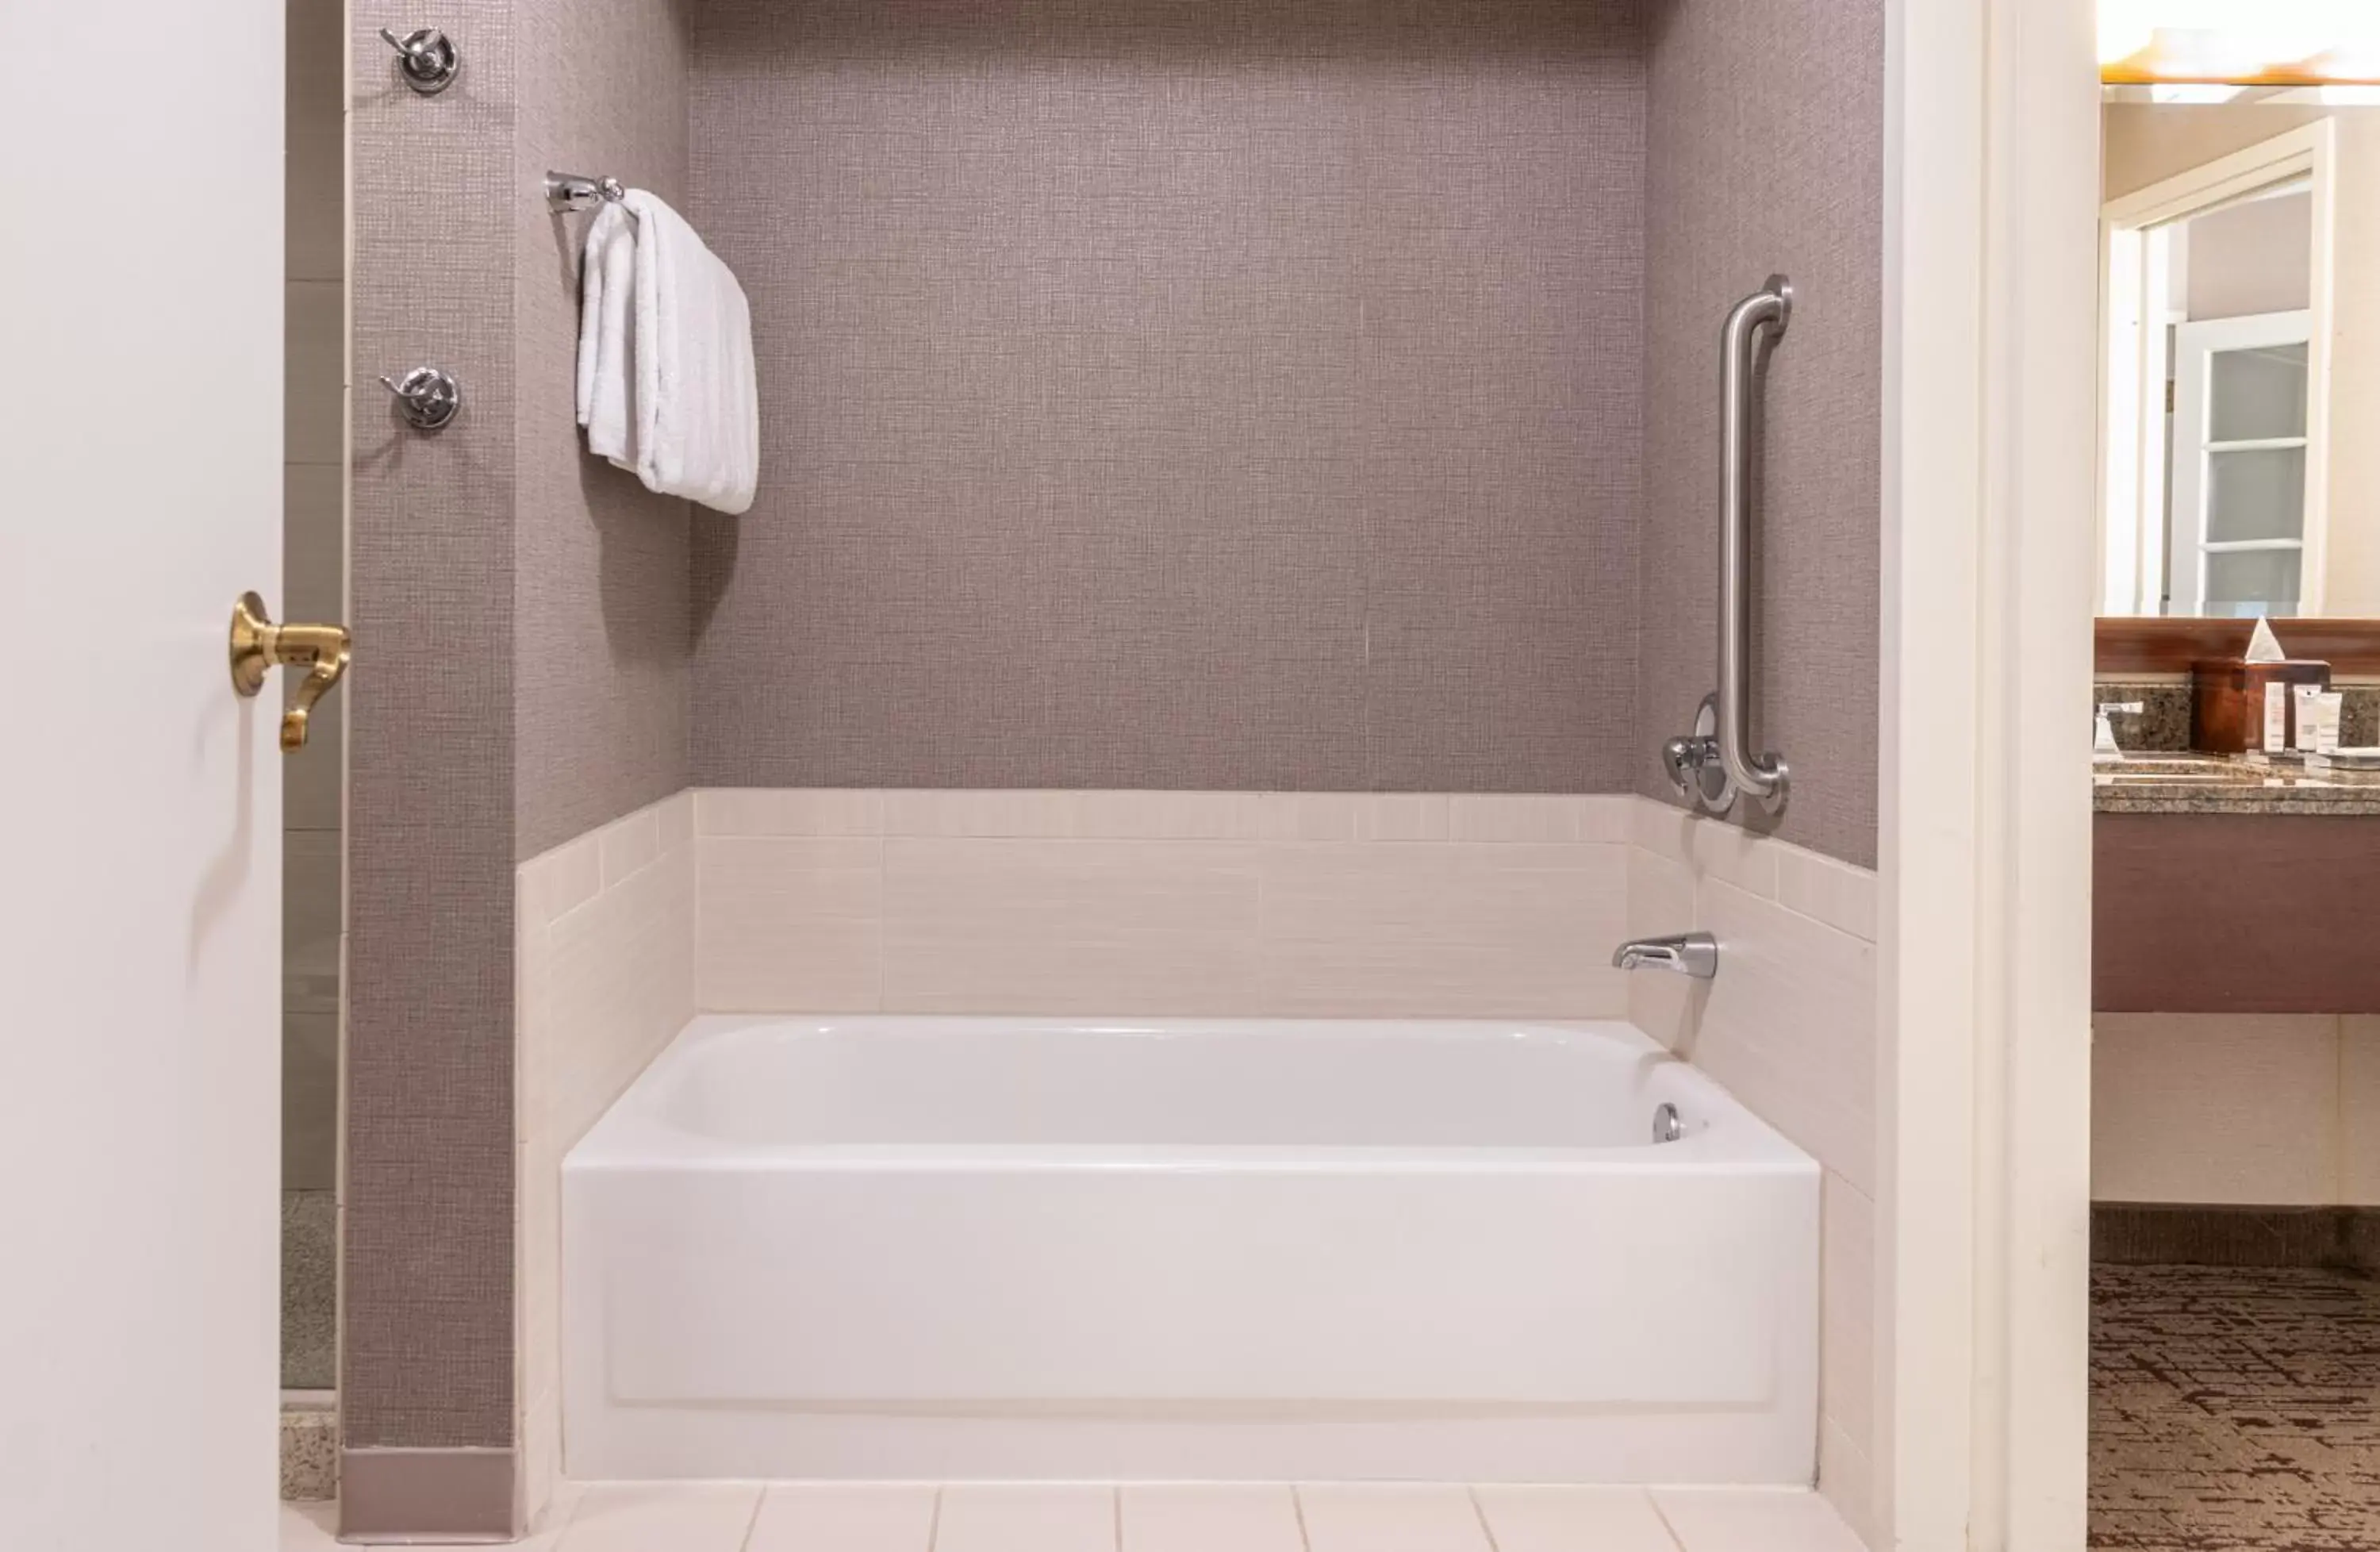 Bathroom in Chicago Marriott Suites Deerfield